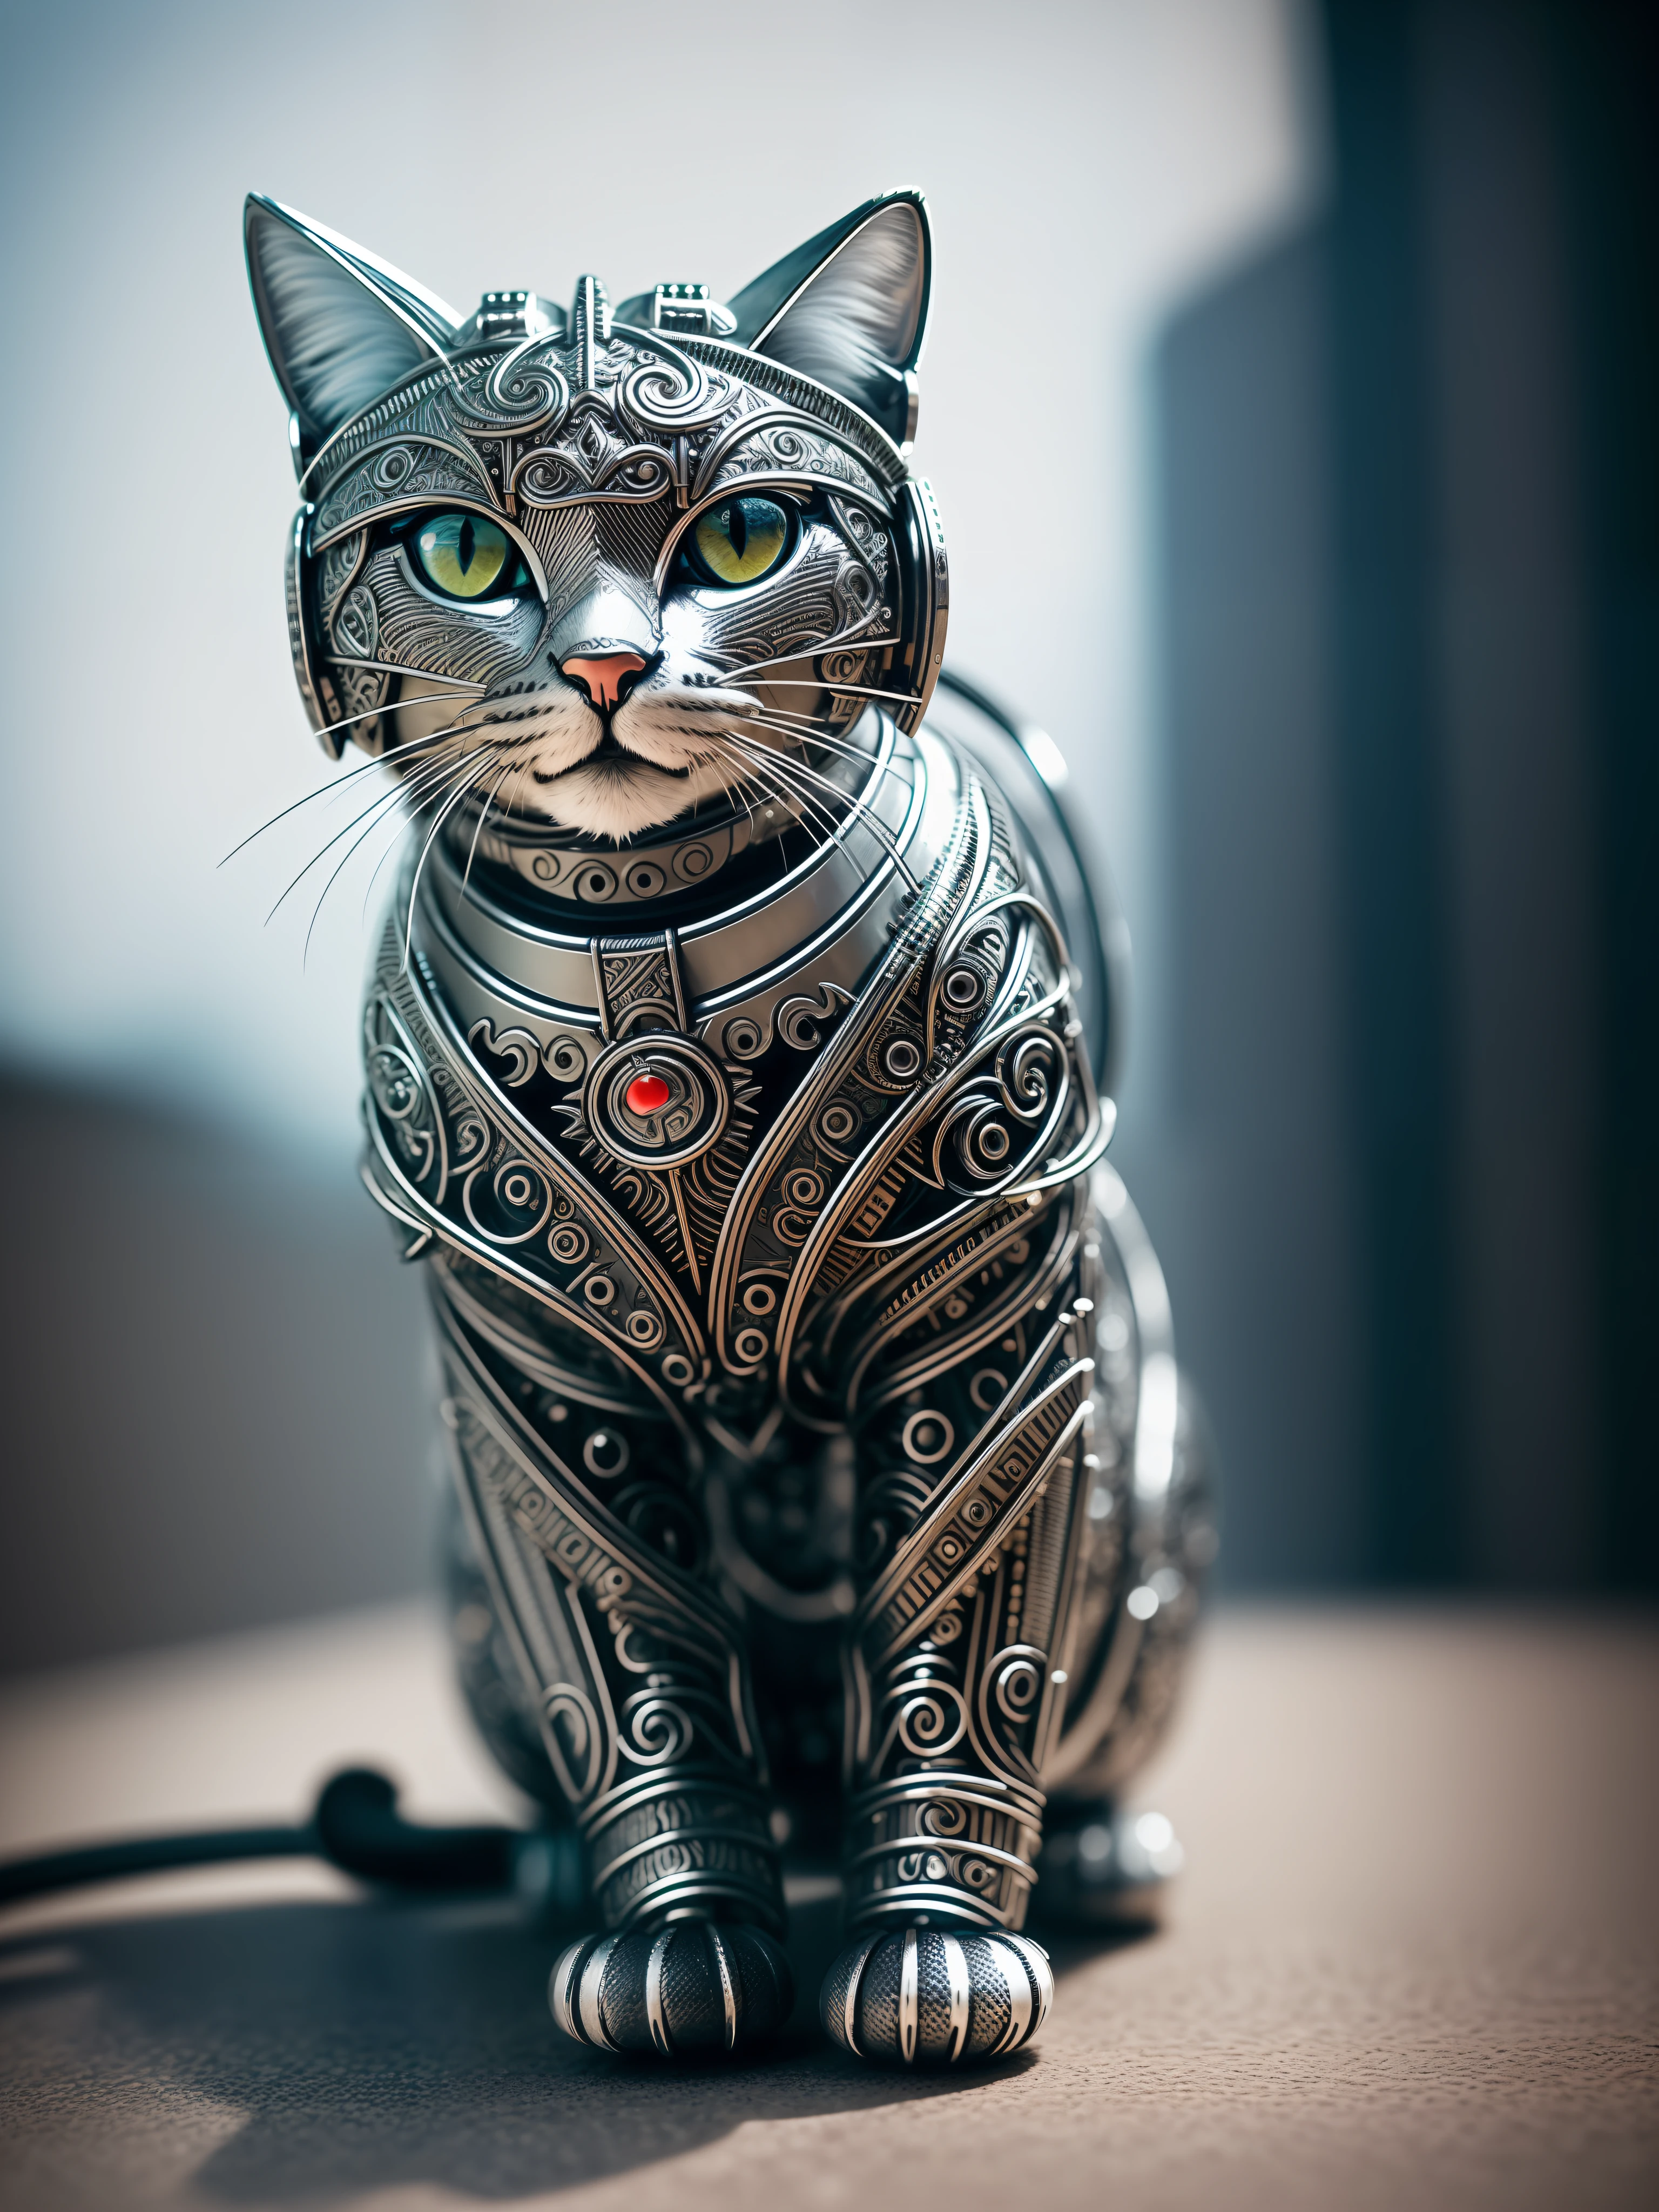 금속으로 만든 귀여운 고양이, (사이보그:1.1), ([꼬리 | de꼬리ed wire] :1.3), (intricate de꼬리), HDR, (intricate de꼬리, hyper-de꼬리ed:1.2), 영화 촬영, 삽화, 중심